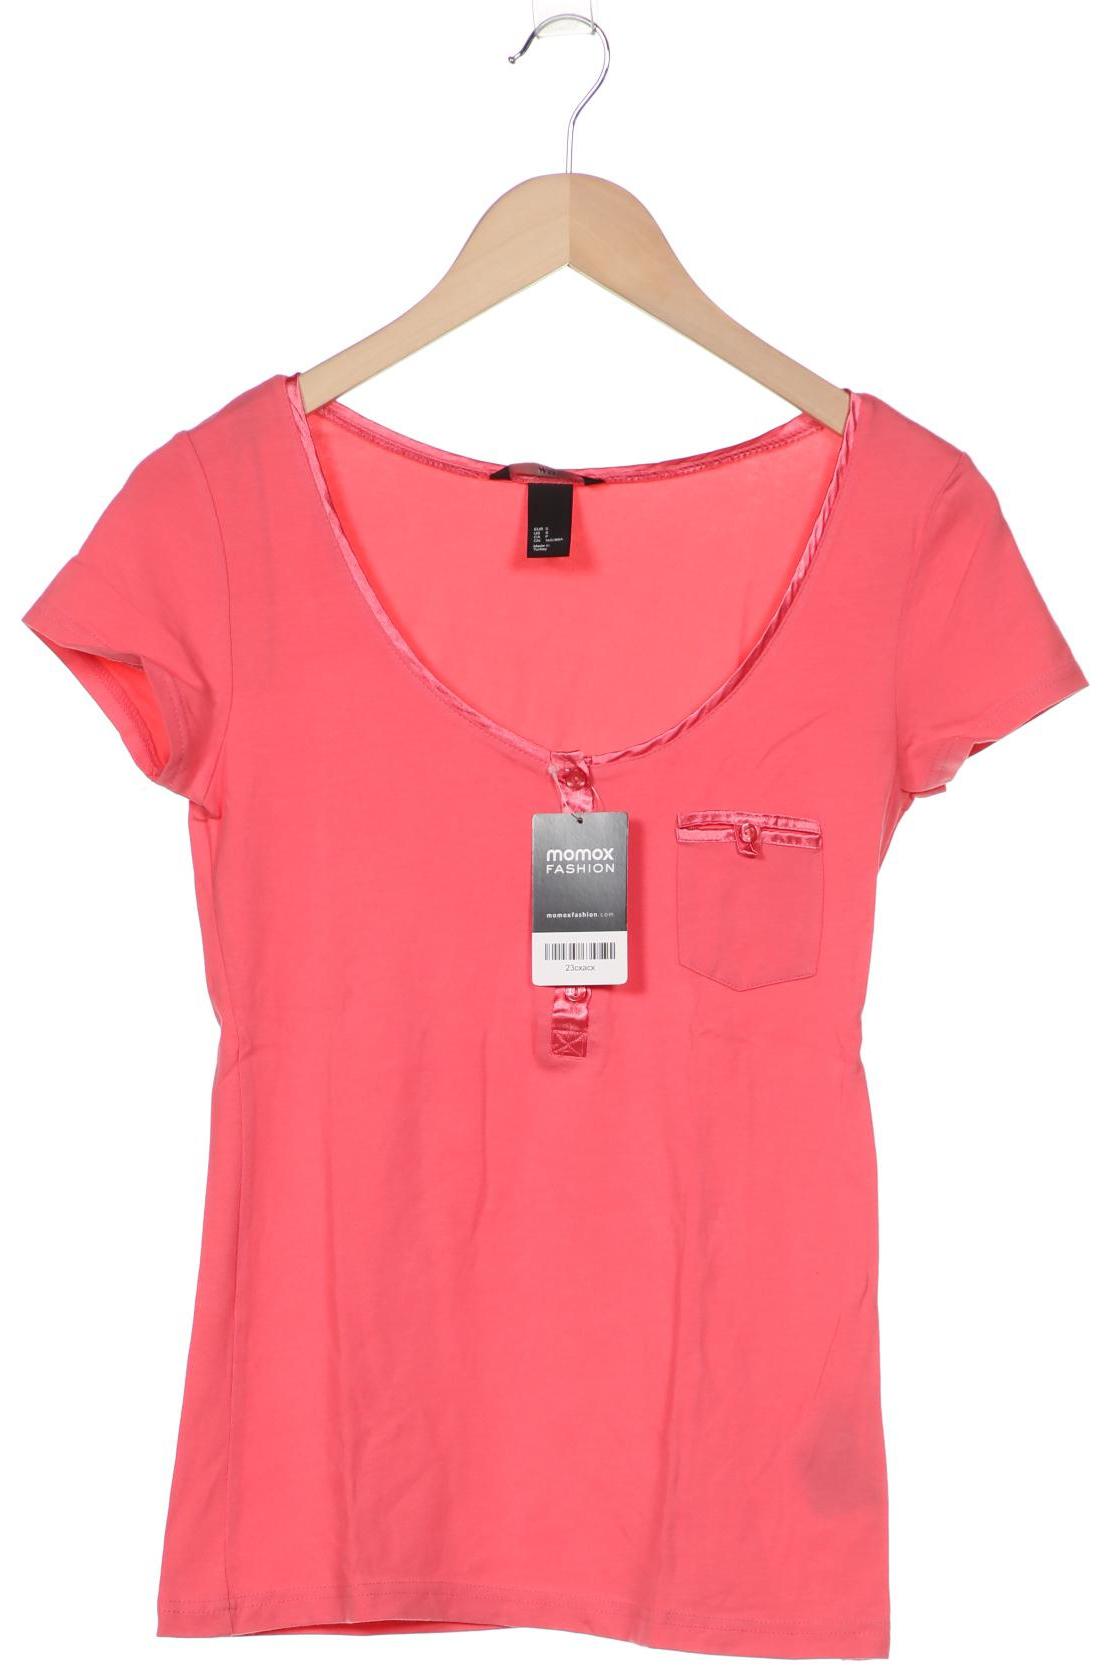 H&M Damen T-Shirt, pink von H&M